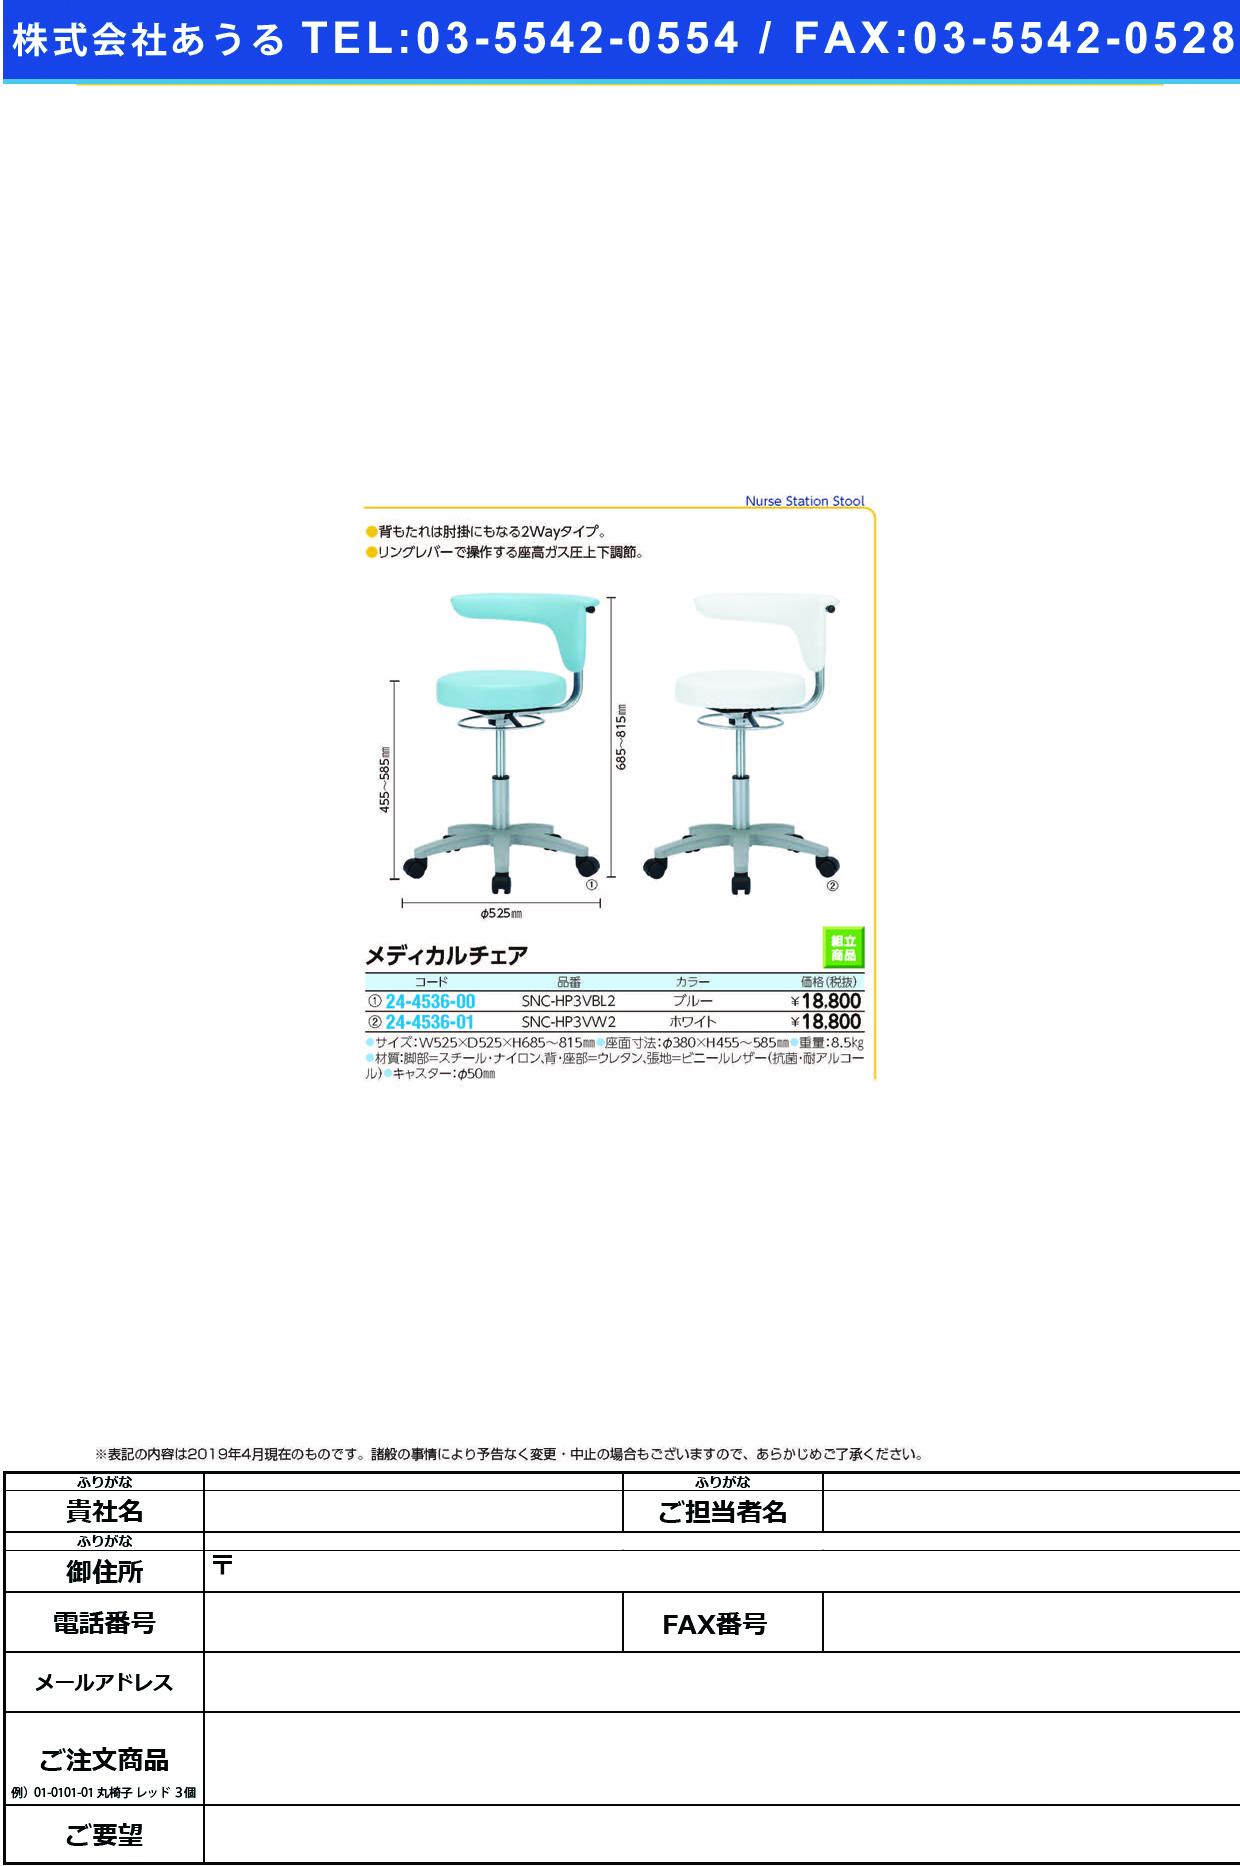 (24-4536-01)メディカルチェア SNC-HP3VW2(ﾎﾜｲﾄ) ﾒﾃﾞｨｶﾙﾁｪｱ【1台単位】【2019年カタログ商品】